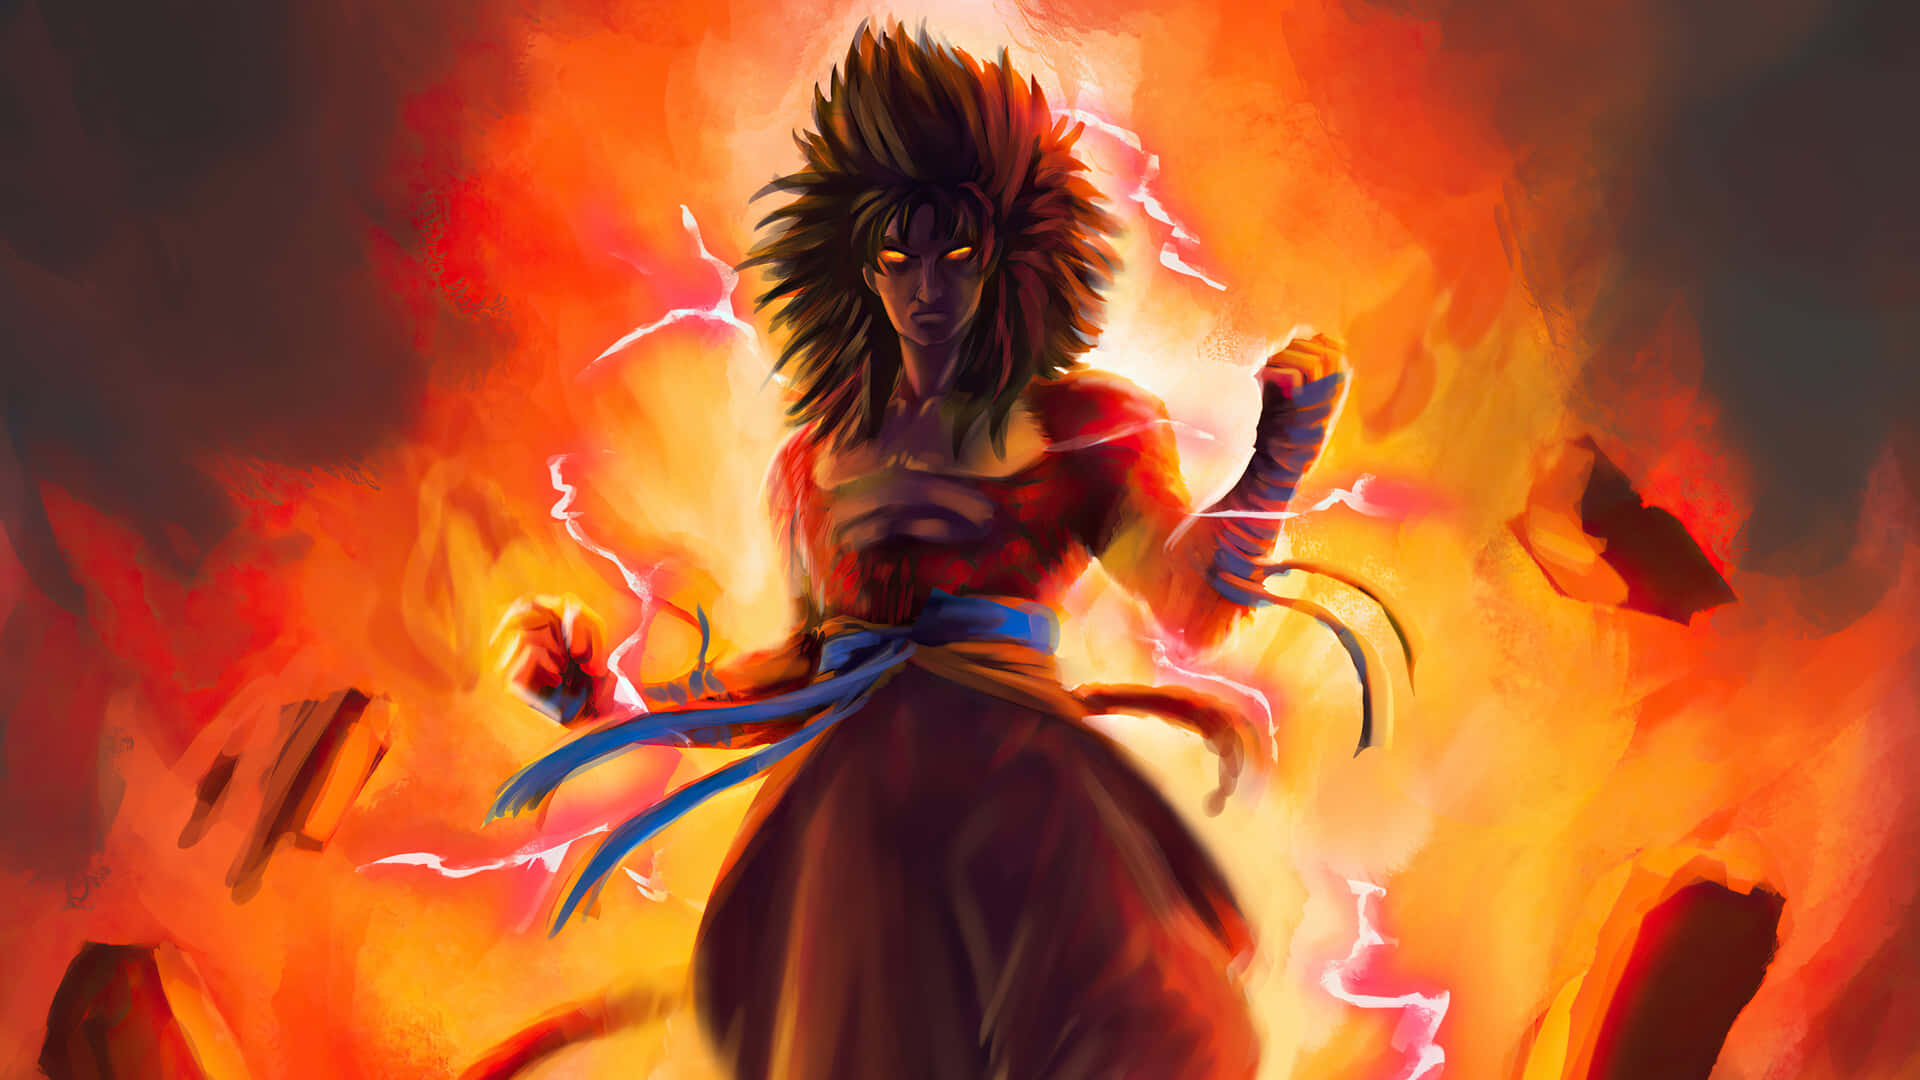 Goku Super Saiyan 4 Dazzling in Power Wallpaper